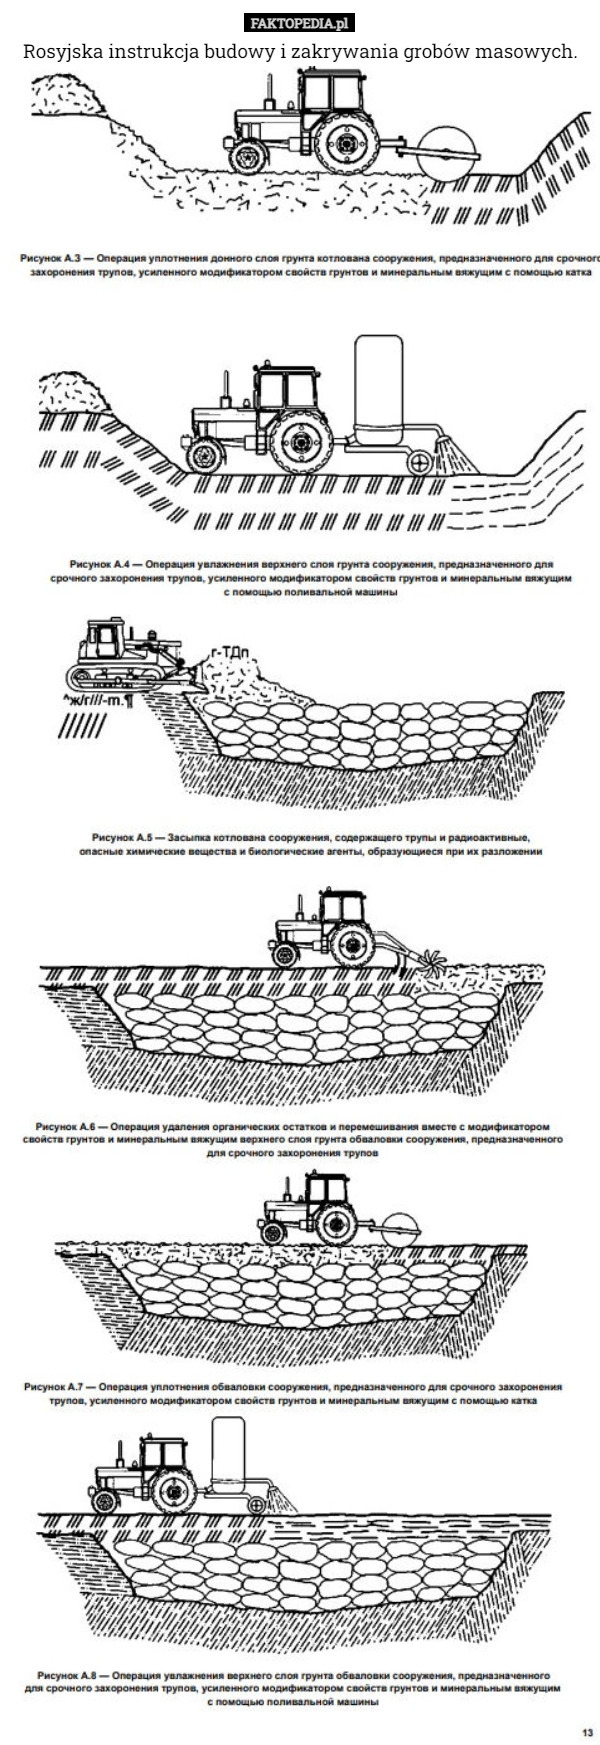 Rosyjska instrukcja budowy i zakrywania grobów masowych. 